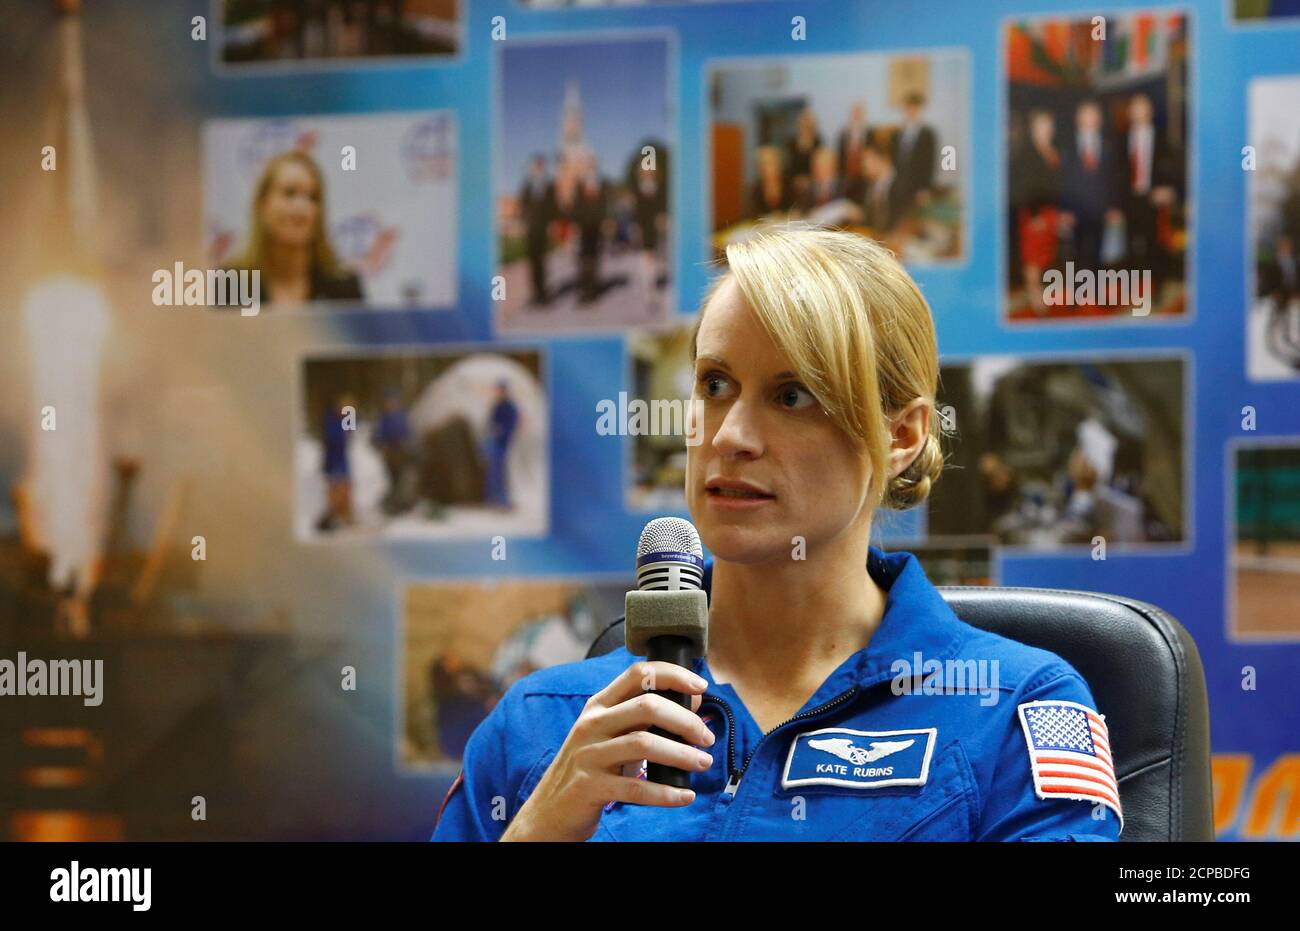 Miembro de la tripulación, la astronauta Kate Rubins de la NASA habla mientras se sienta detrás de una pared de cristal durante una conferencia de prensa antes del lanzamiento a la Estación Espacial Internacional (ISS) en el cosmódromo de Baikonur, Kazajstán, 6 de julio de 2016. REUTERS/Shamil Zhumatov Foto de stock